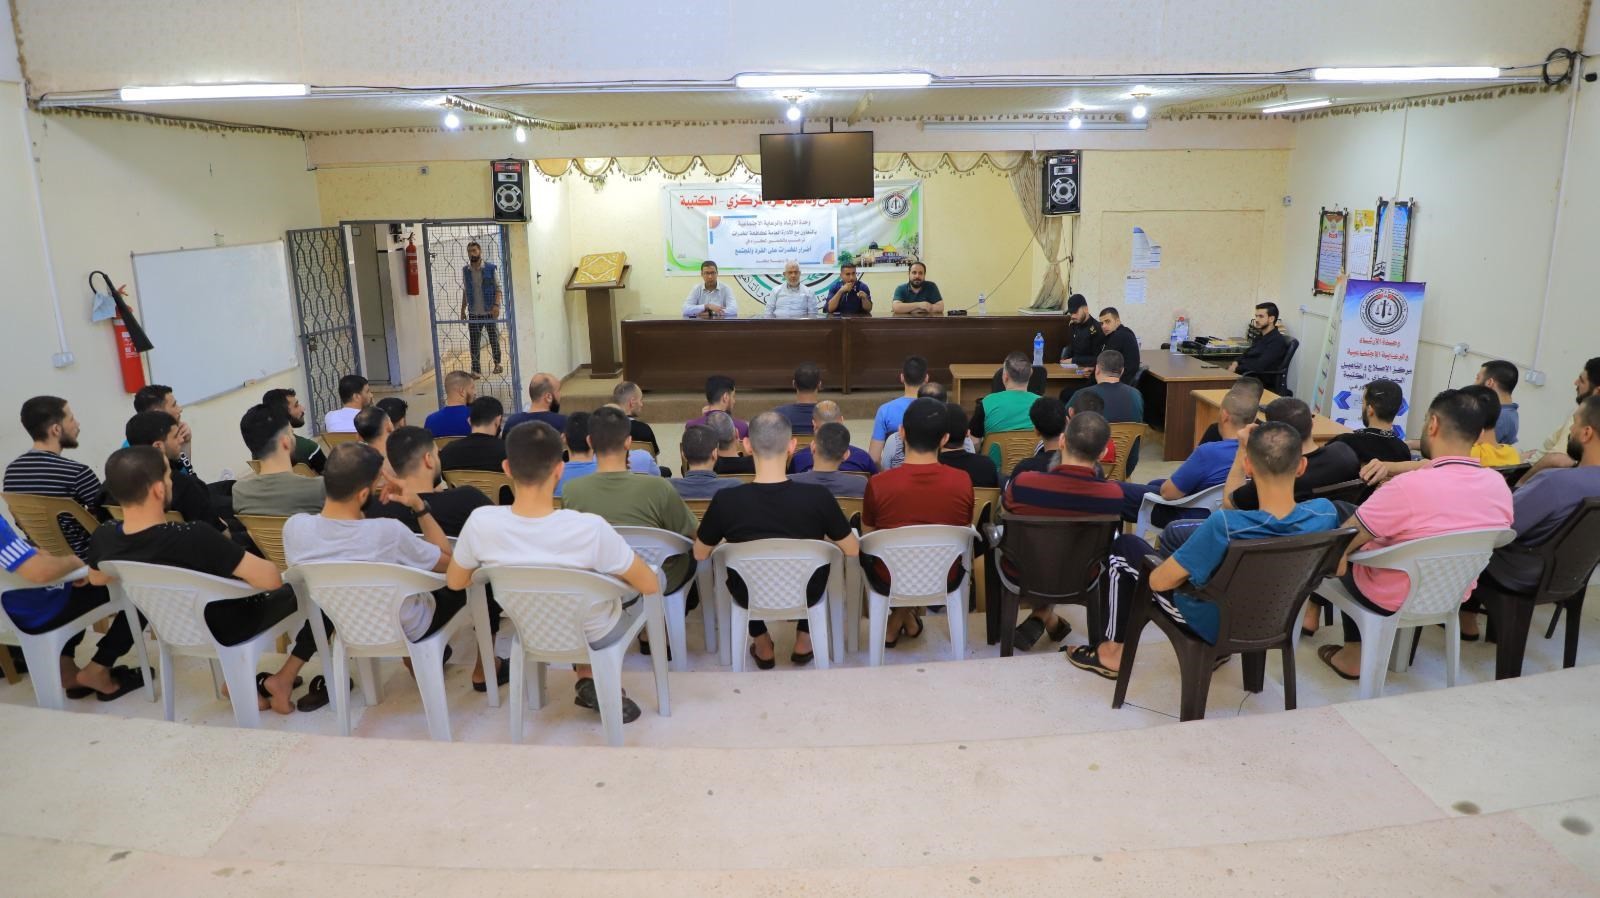 مكافحة المخدرات بغزة تُطلق برنامجًا توعويًا للنزلاء والموقوفين